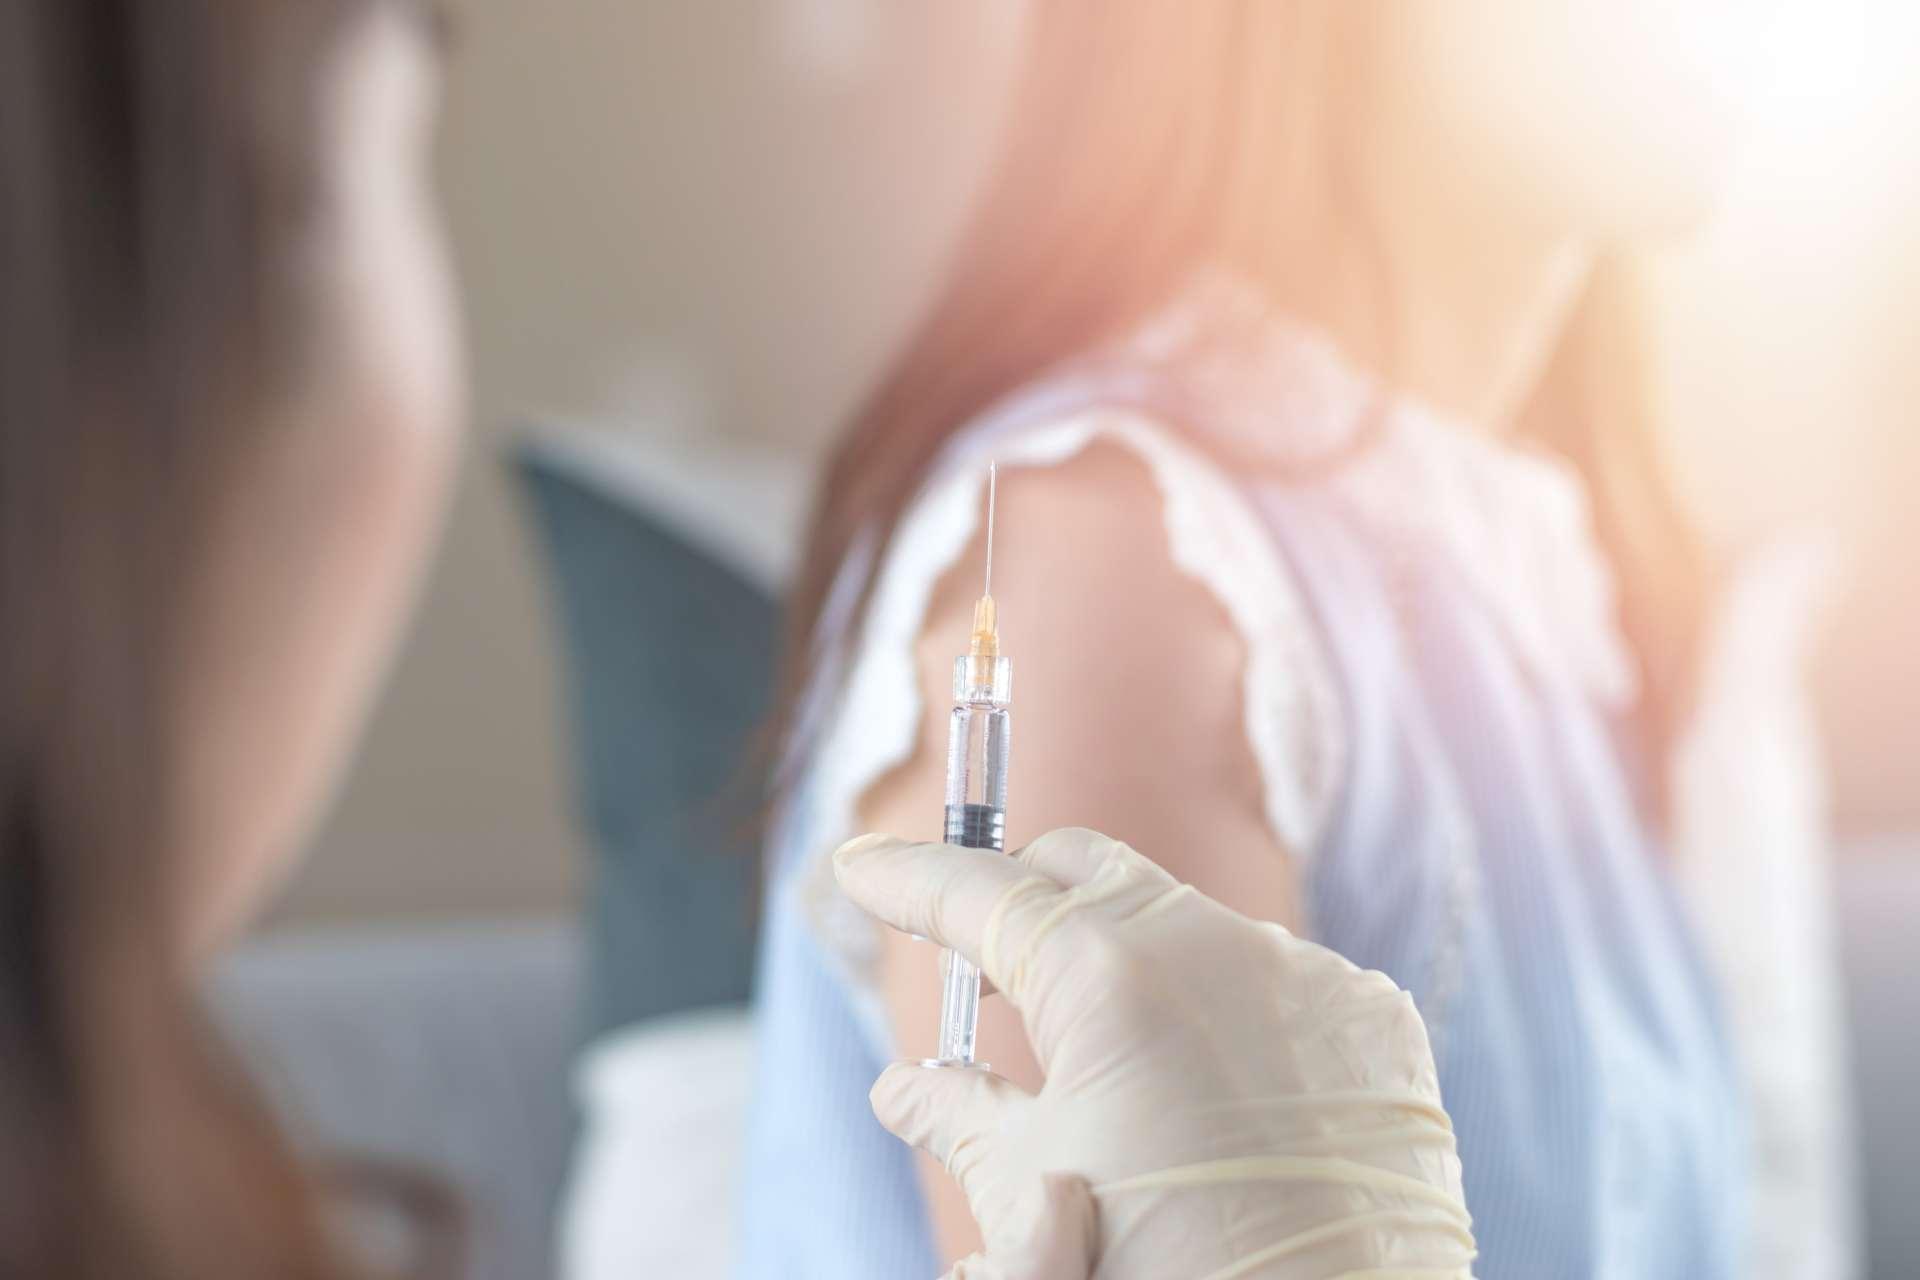 Weltimpfwoche und Konzept des Internationalen HPV-Sensibilisierungstages. Frau mit Impfung gegen Influenza oder Grippeimpfung oder HPV-Prävention mit Spritze durch Krankenschwester oder Arzt.